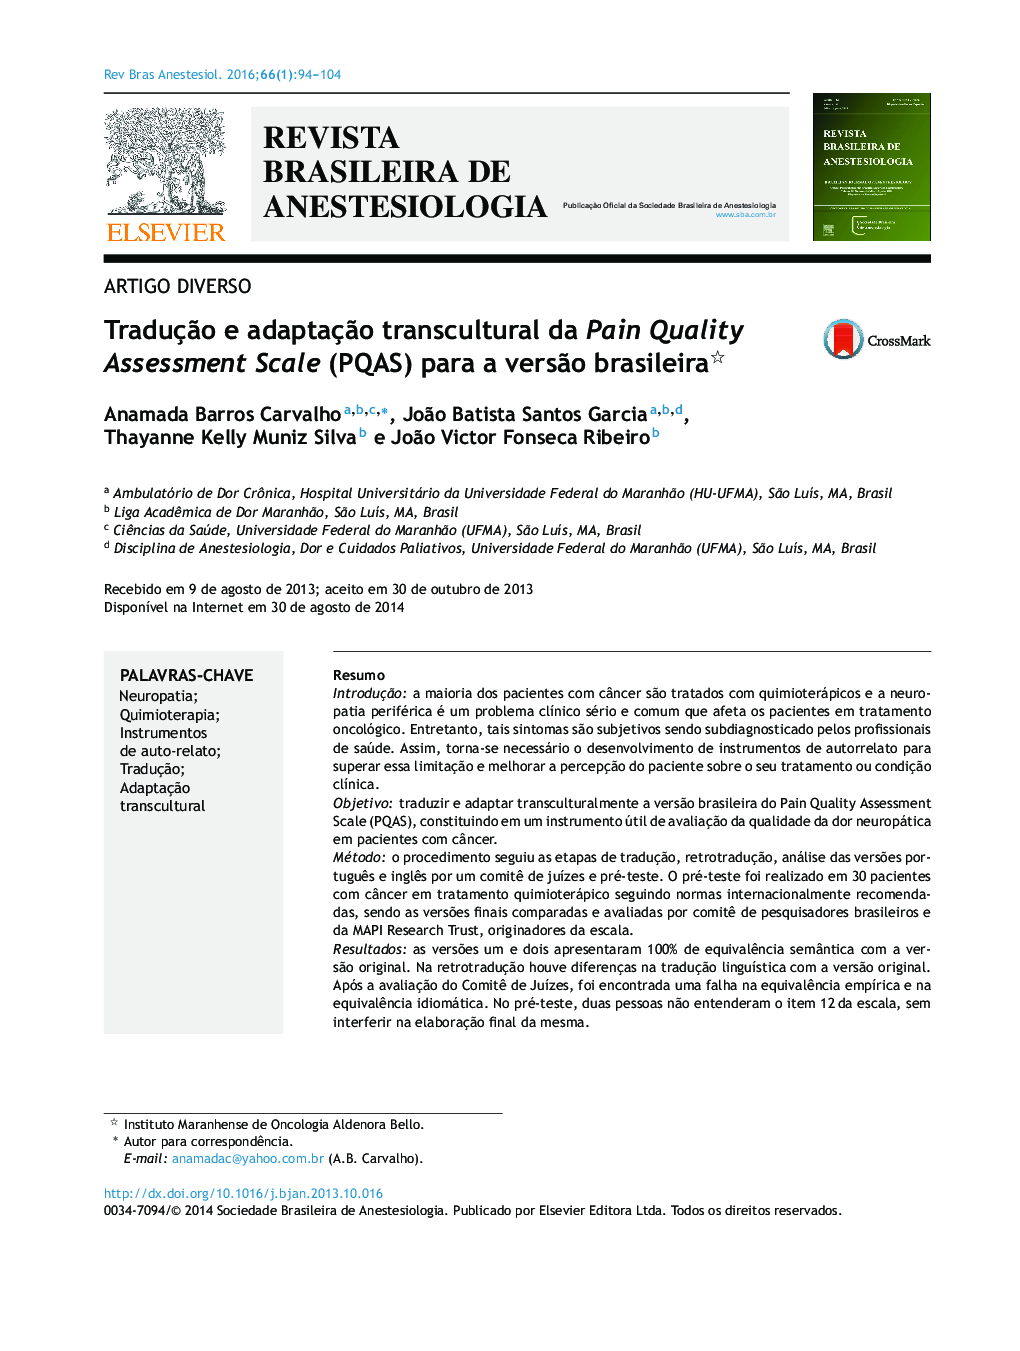 Tradução e adaptação transcultural da Pain Quality Assessment Scale (PQAS) para a versão brasileira 